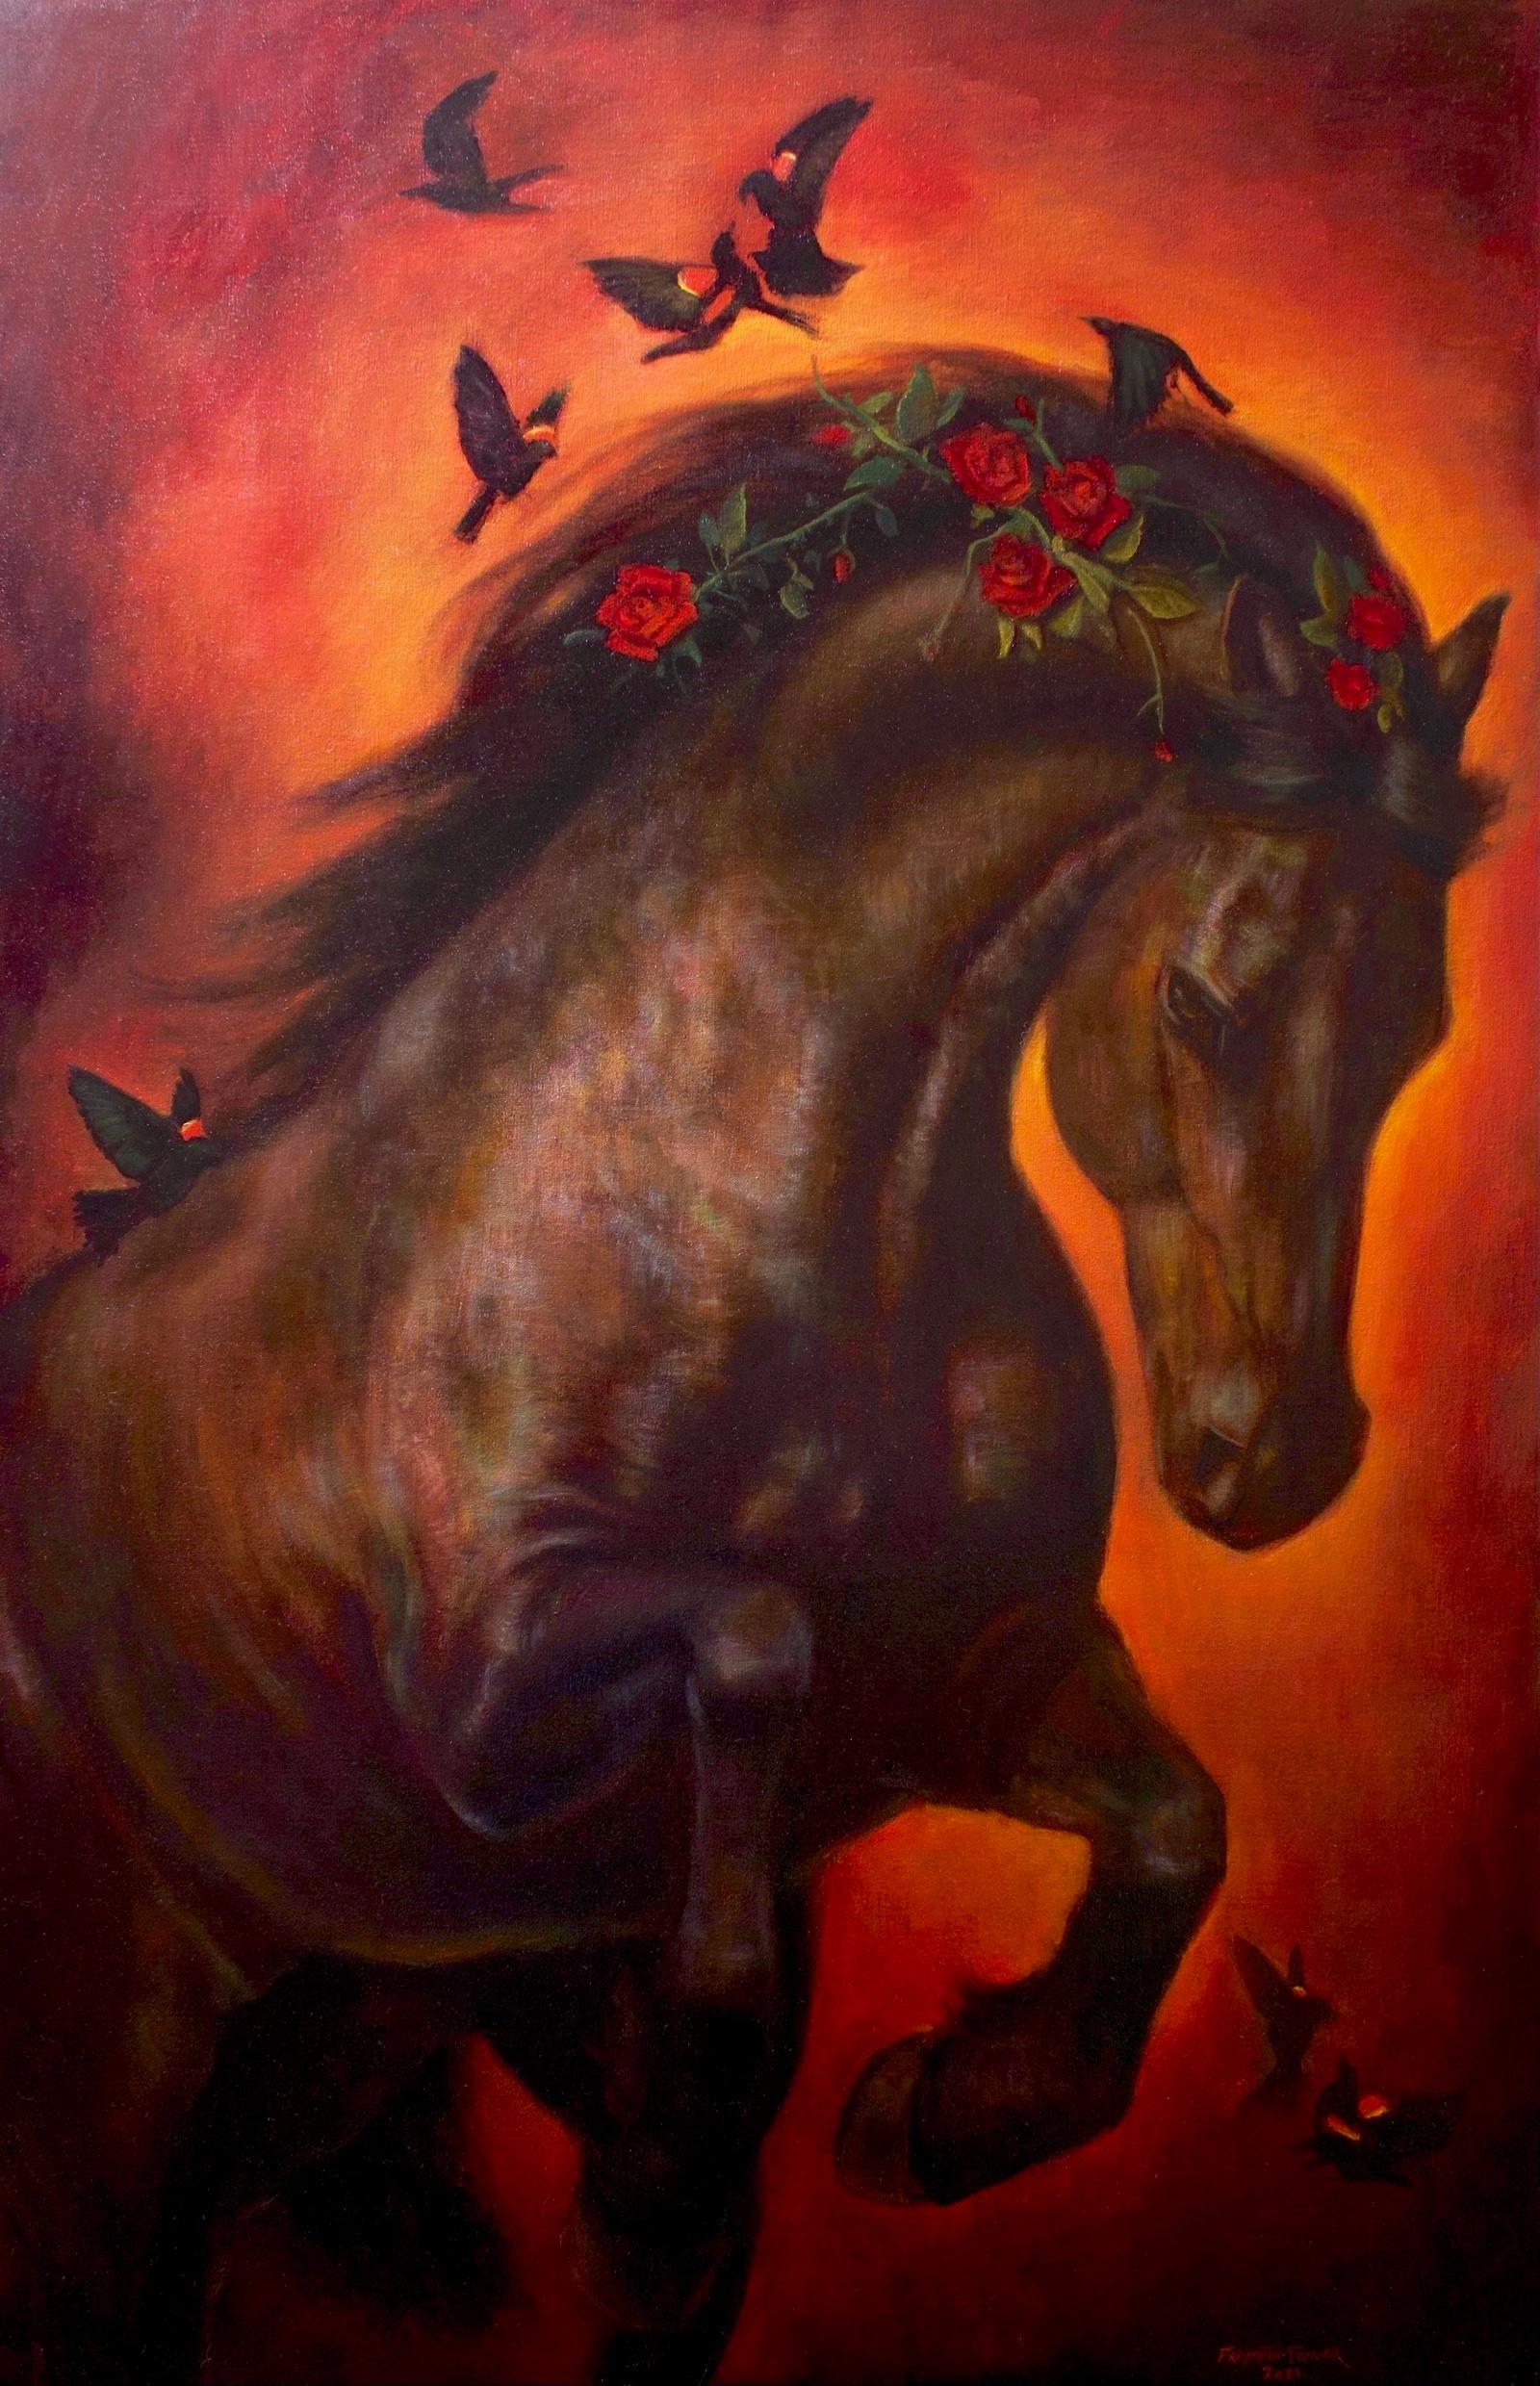 Figurative Painting Rose Freymuth-Frazier - Burning Desire - Sable Mare avec fleurs et papillons et fond rose ambré